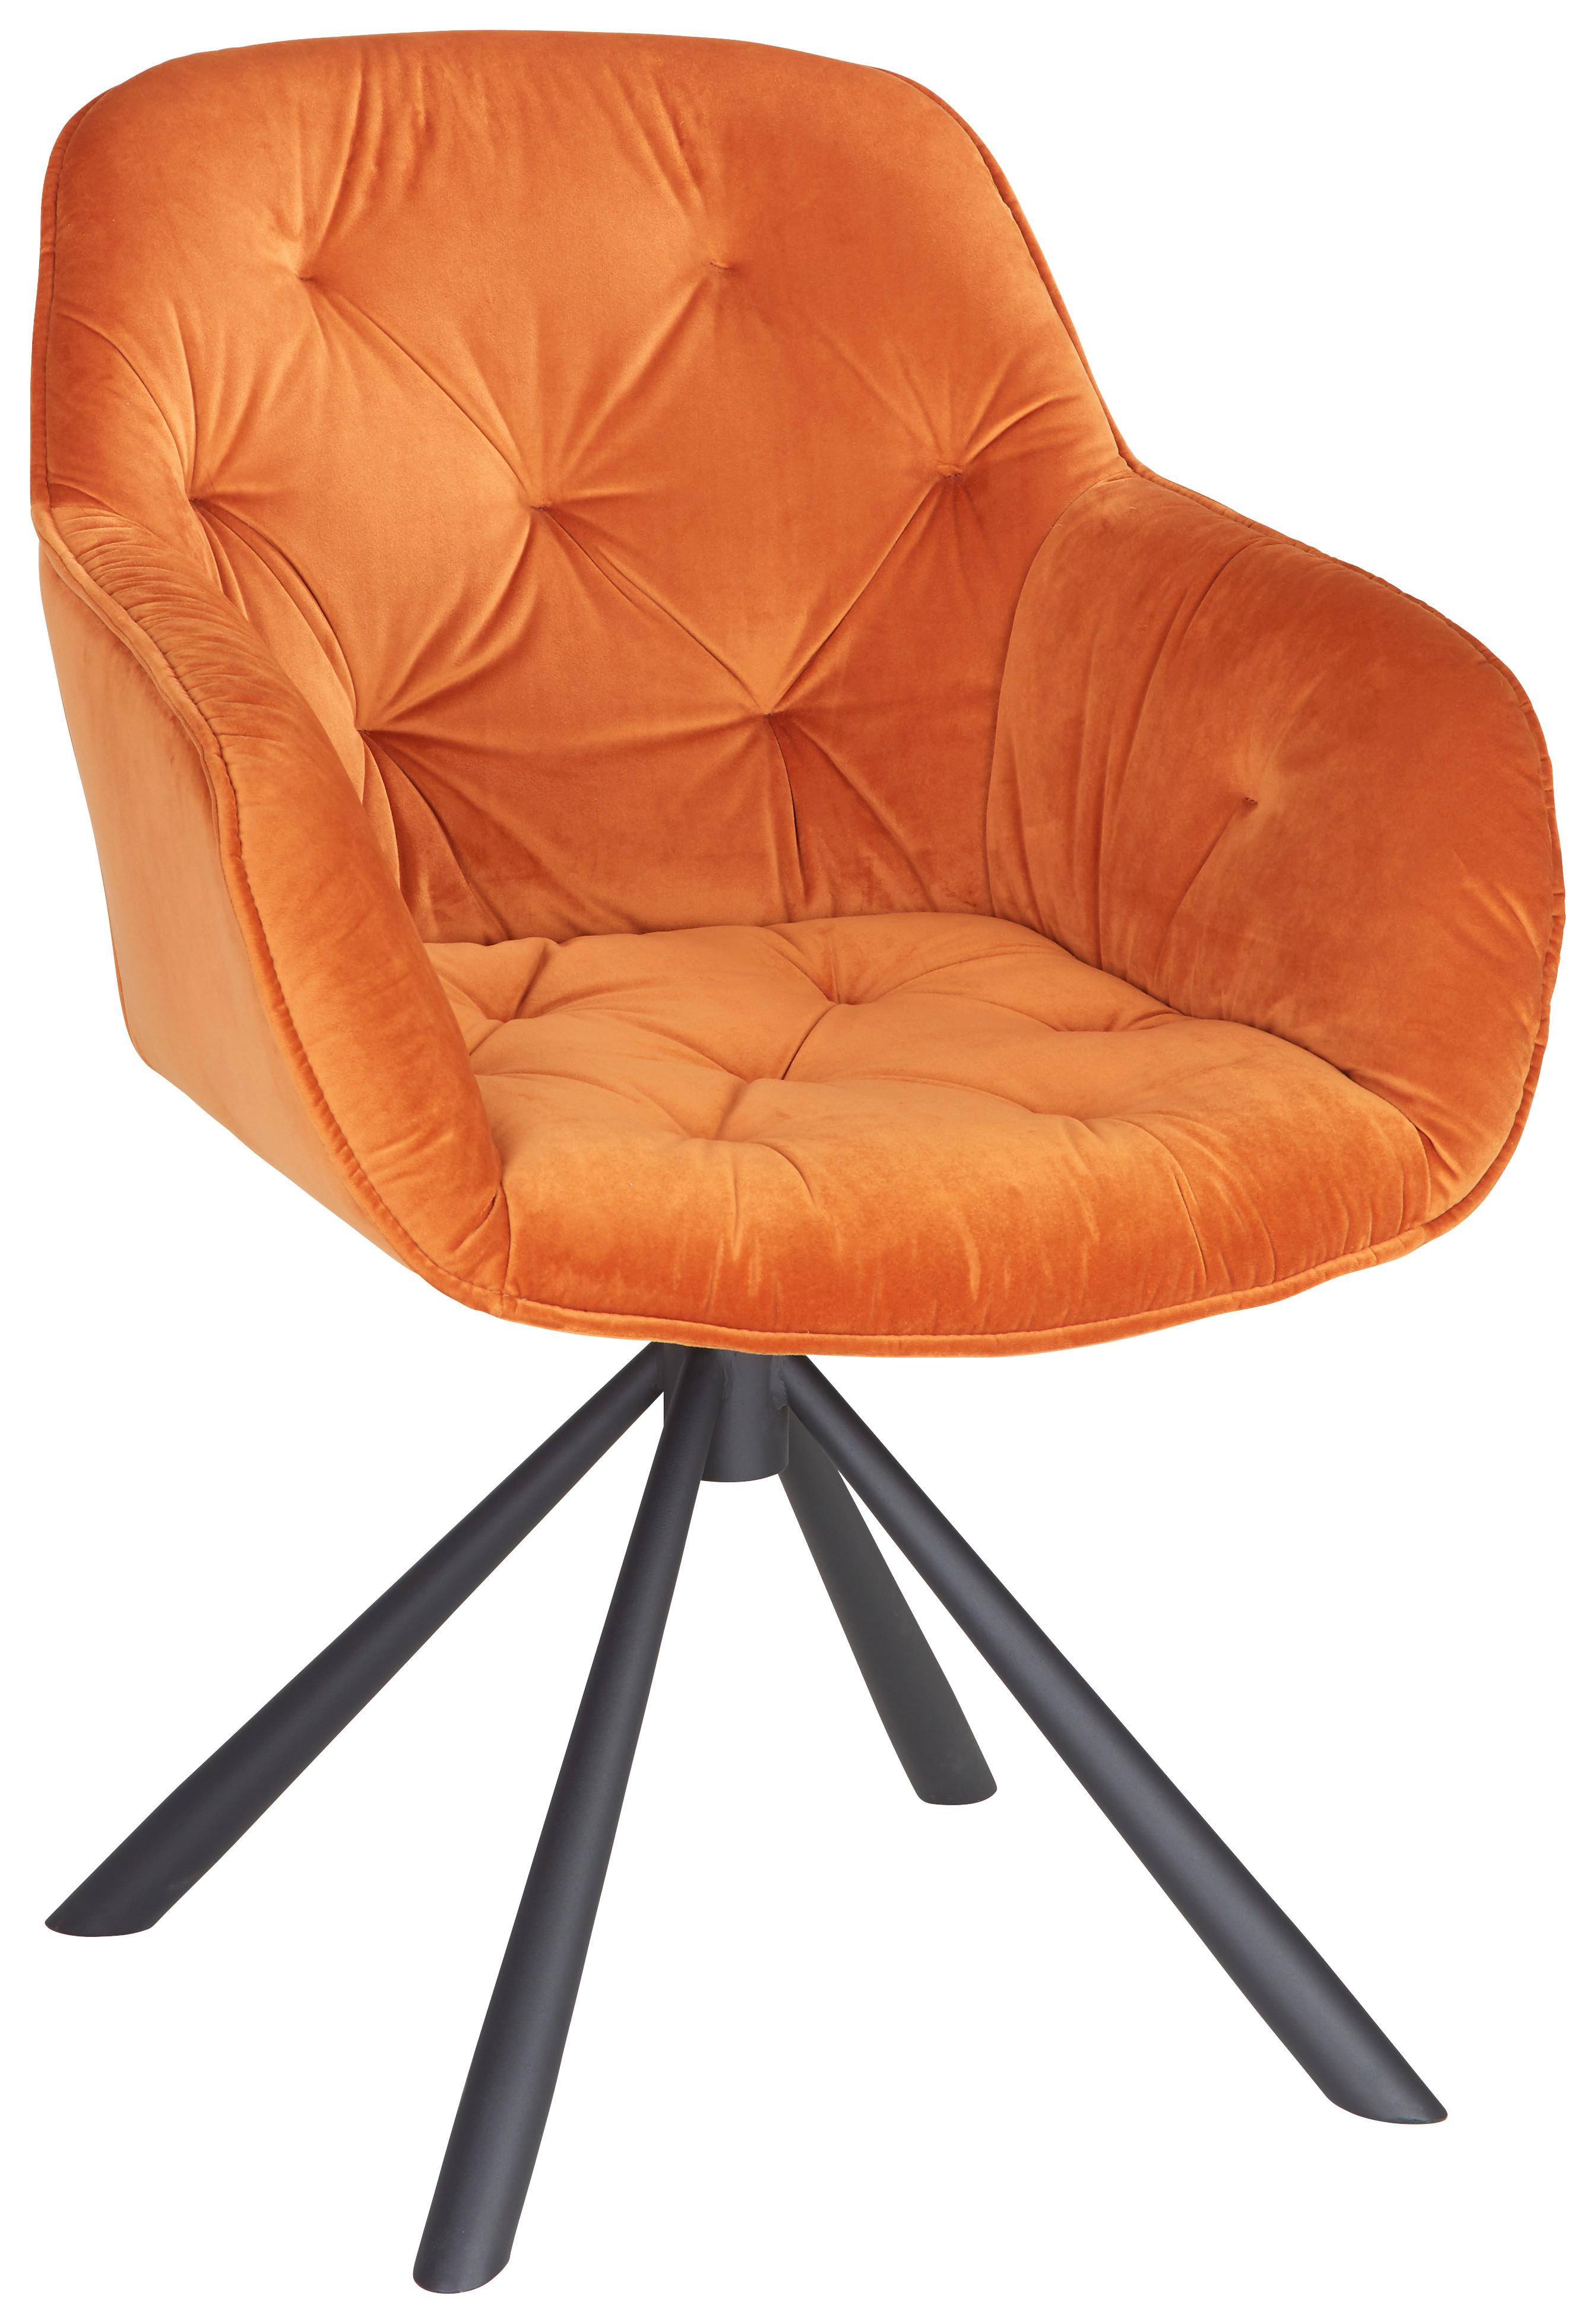 Židle Eileen Oranžová - oranžová/černá, Lifestyle, kov/textil (63/86/66cm) - Premium Living